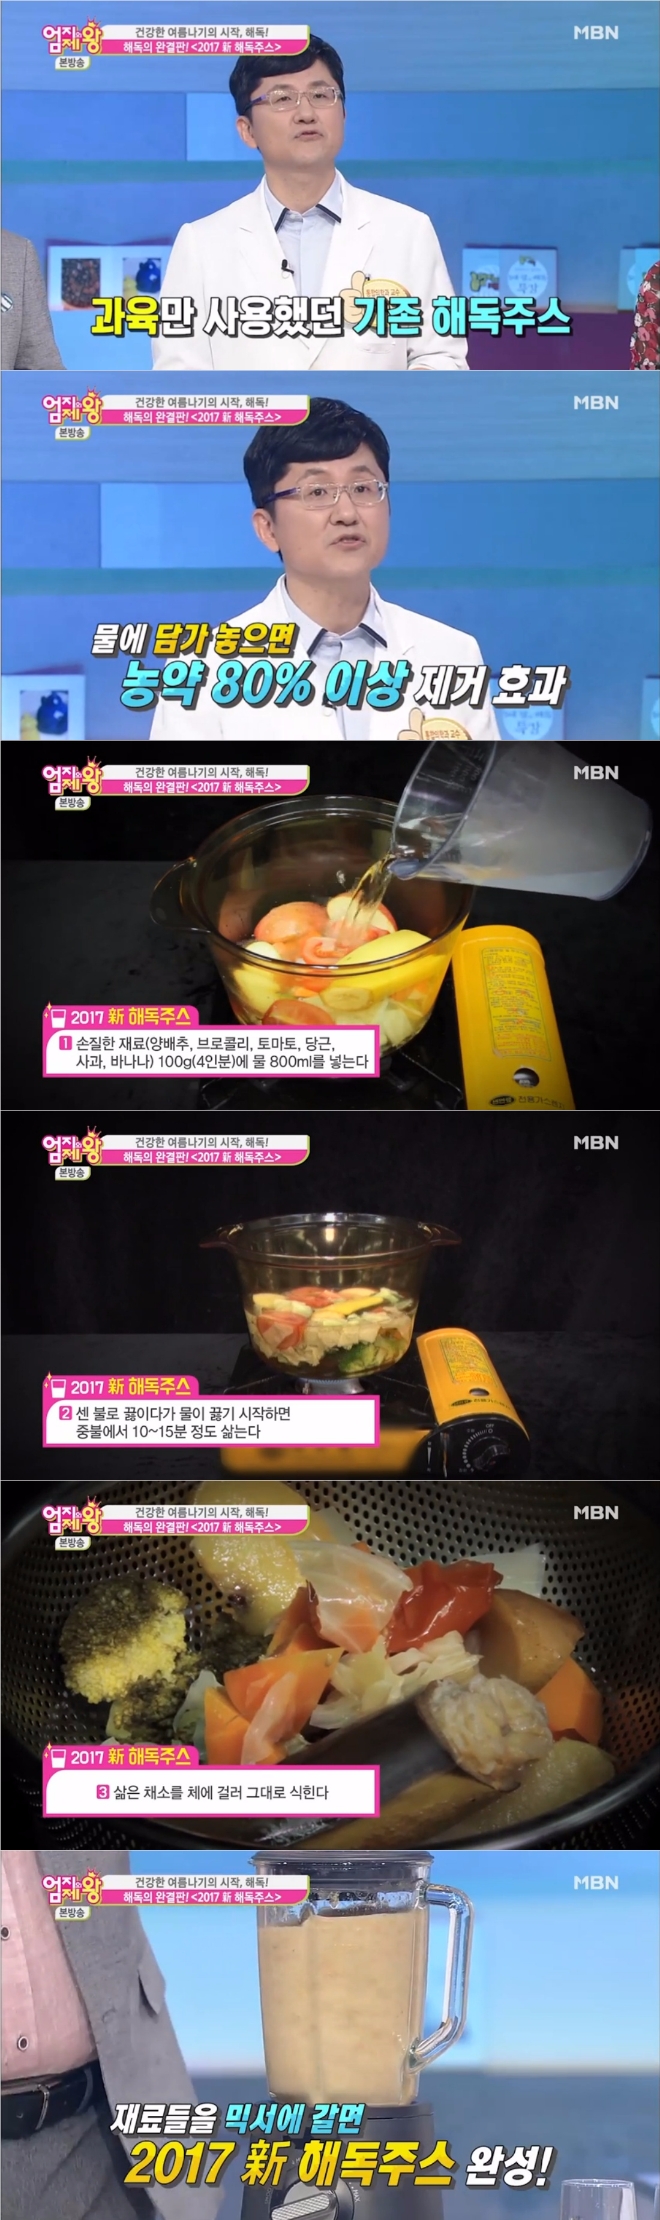 20일 밤 방송된 MBN '엄지의 제왕'에서는 과일 껍질까지 이용한 2017년판 '신(新) 해독주스' 레시피가 공개됐다. 사진=MBN 방송 캡처